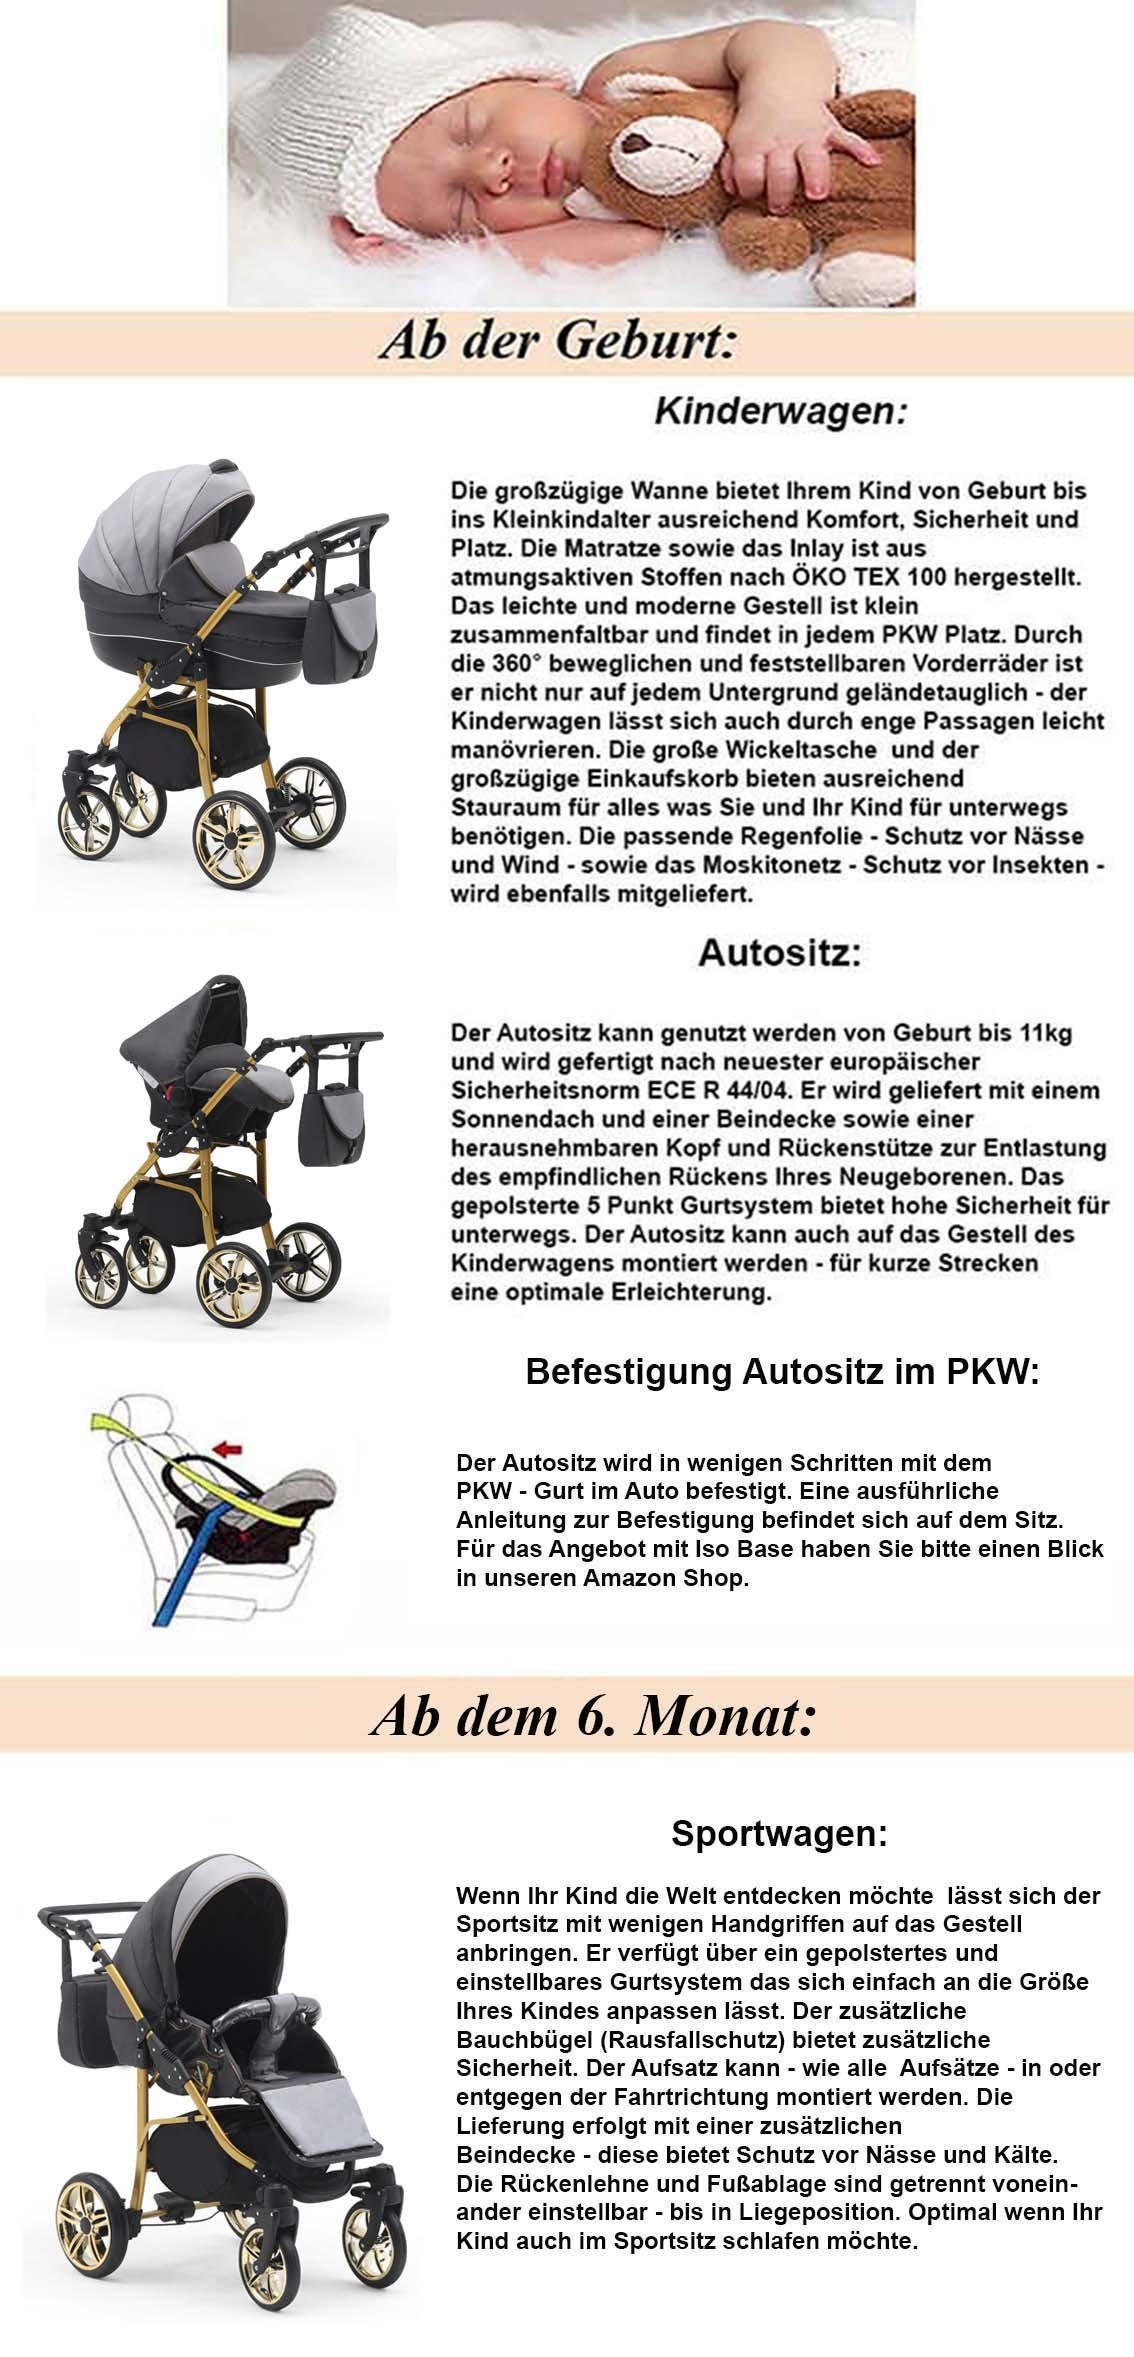 babies-on-wheels Kombi-Kinderwagen 3 in Schwarz-Grau-Weiß Farben 16 - Gold- Cosmo Kinderwagen-Set 1 Teile in 46